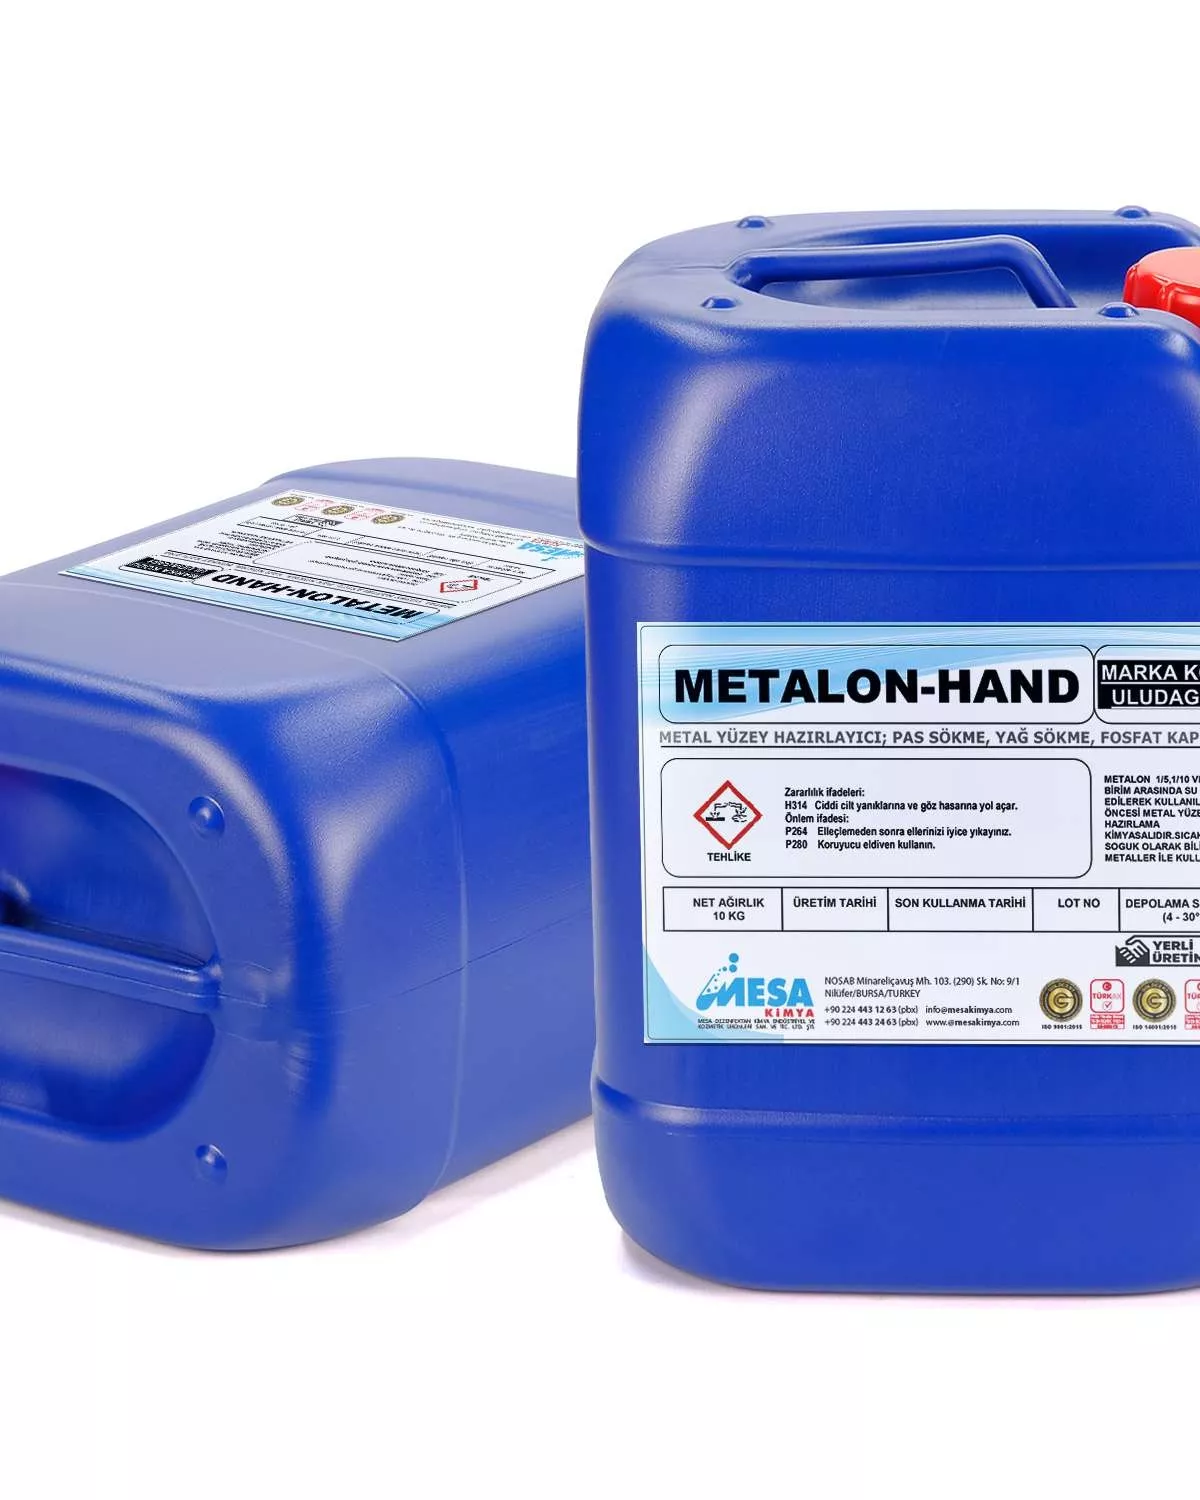 Metal yüzey fosfatlama metalon-hand 5 kg